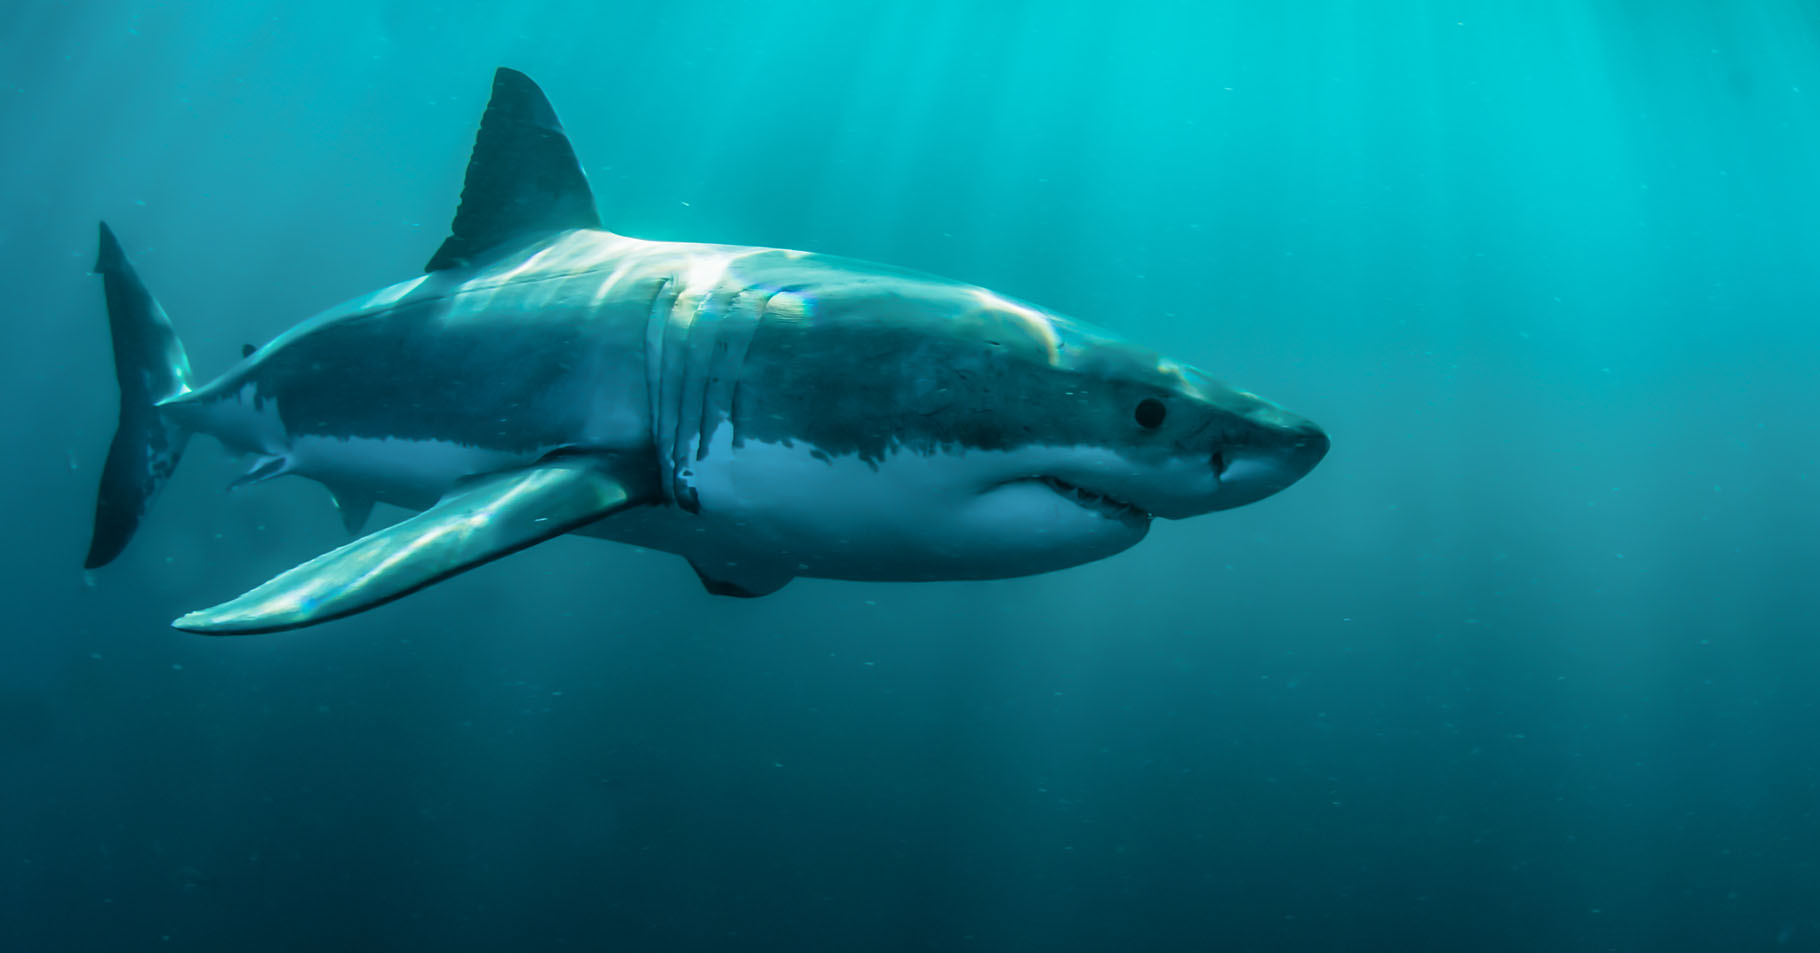 Le Grand requin blanc évolue dans des eaux peu profondes. Il a le&nbsp;ventre blanc, d'où son nom. © Steven Surina, tous droits réservés